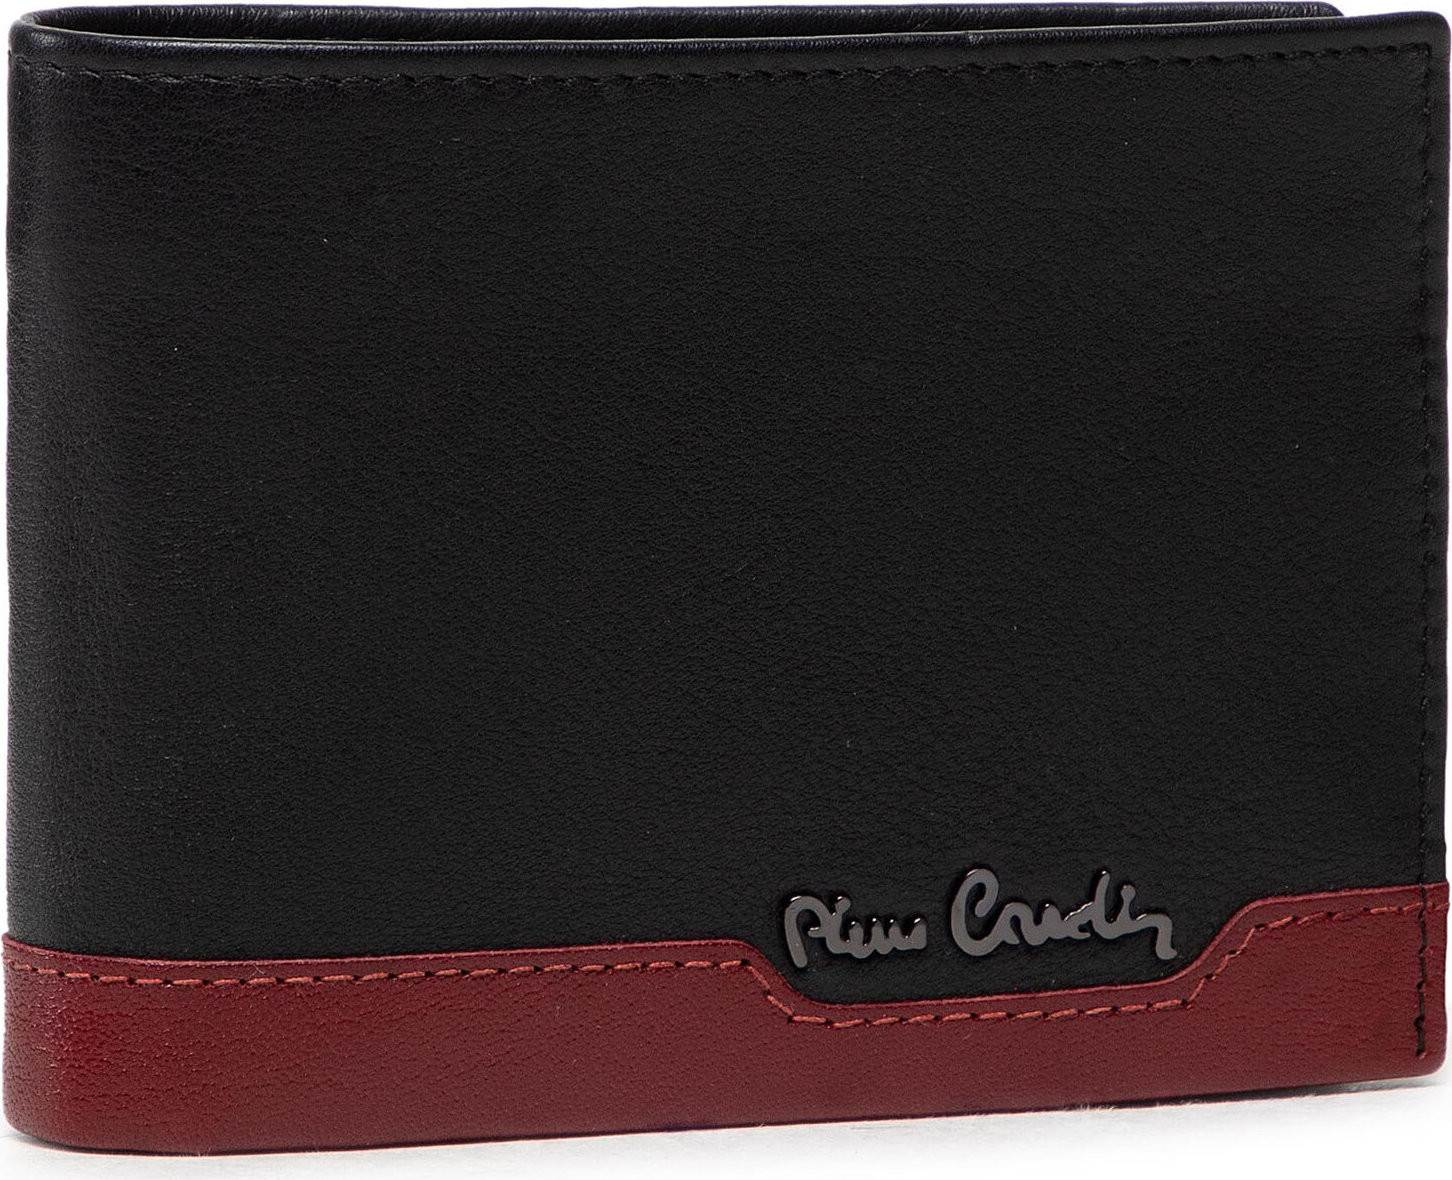 Velká pánská peněženka Pierre Cardin TILAK37 8806 Czarny/Czerwony